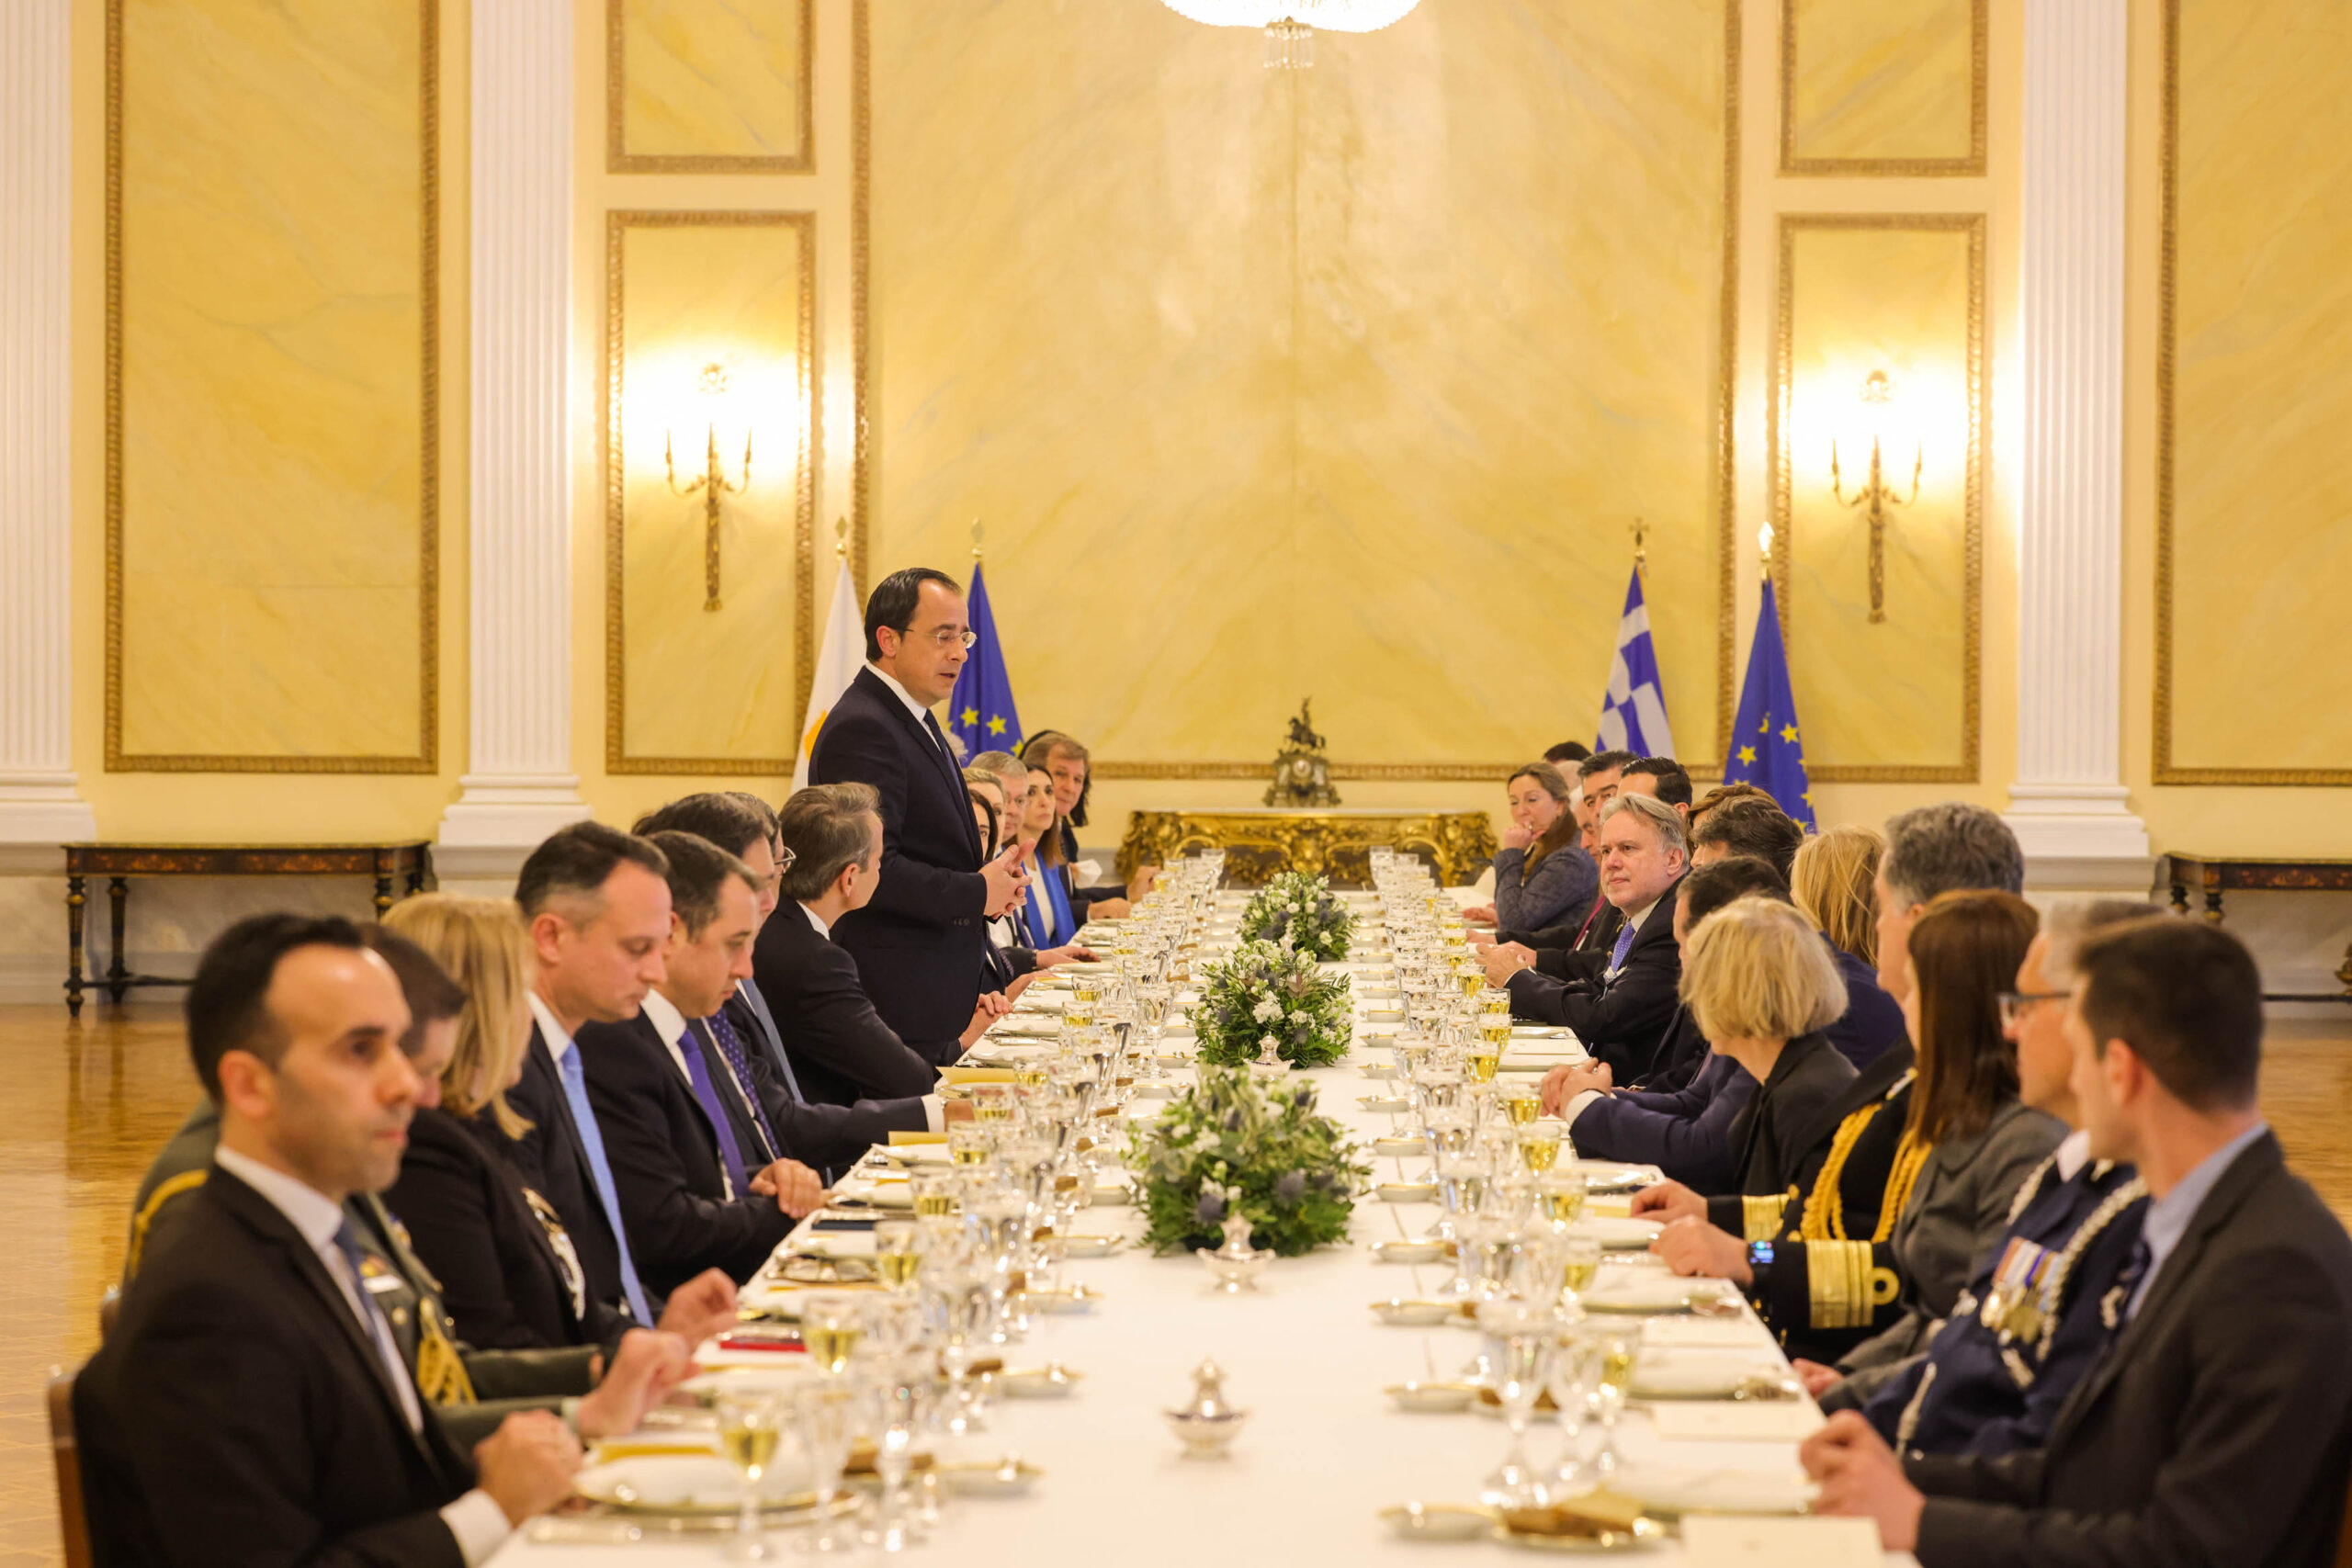 Στην Αθήνα ο νέος Πρόεδρος της Κύπρου, Νίκος Χριστοδουλίδης - Οι συναντήσεις, το γεύμα του ΠτΔ 